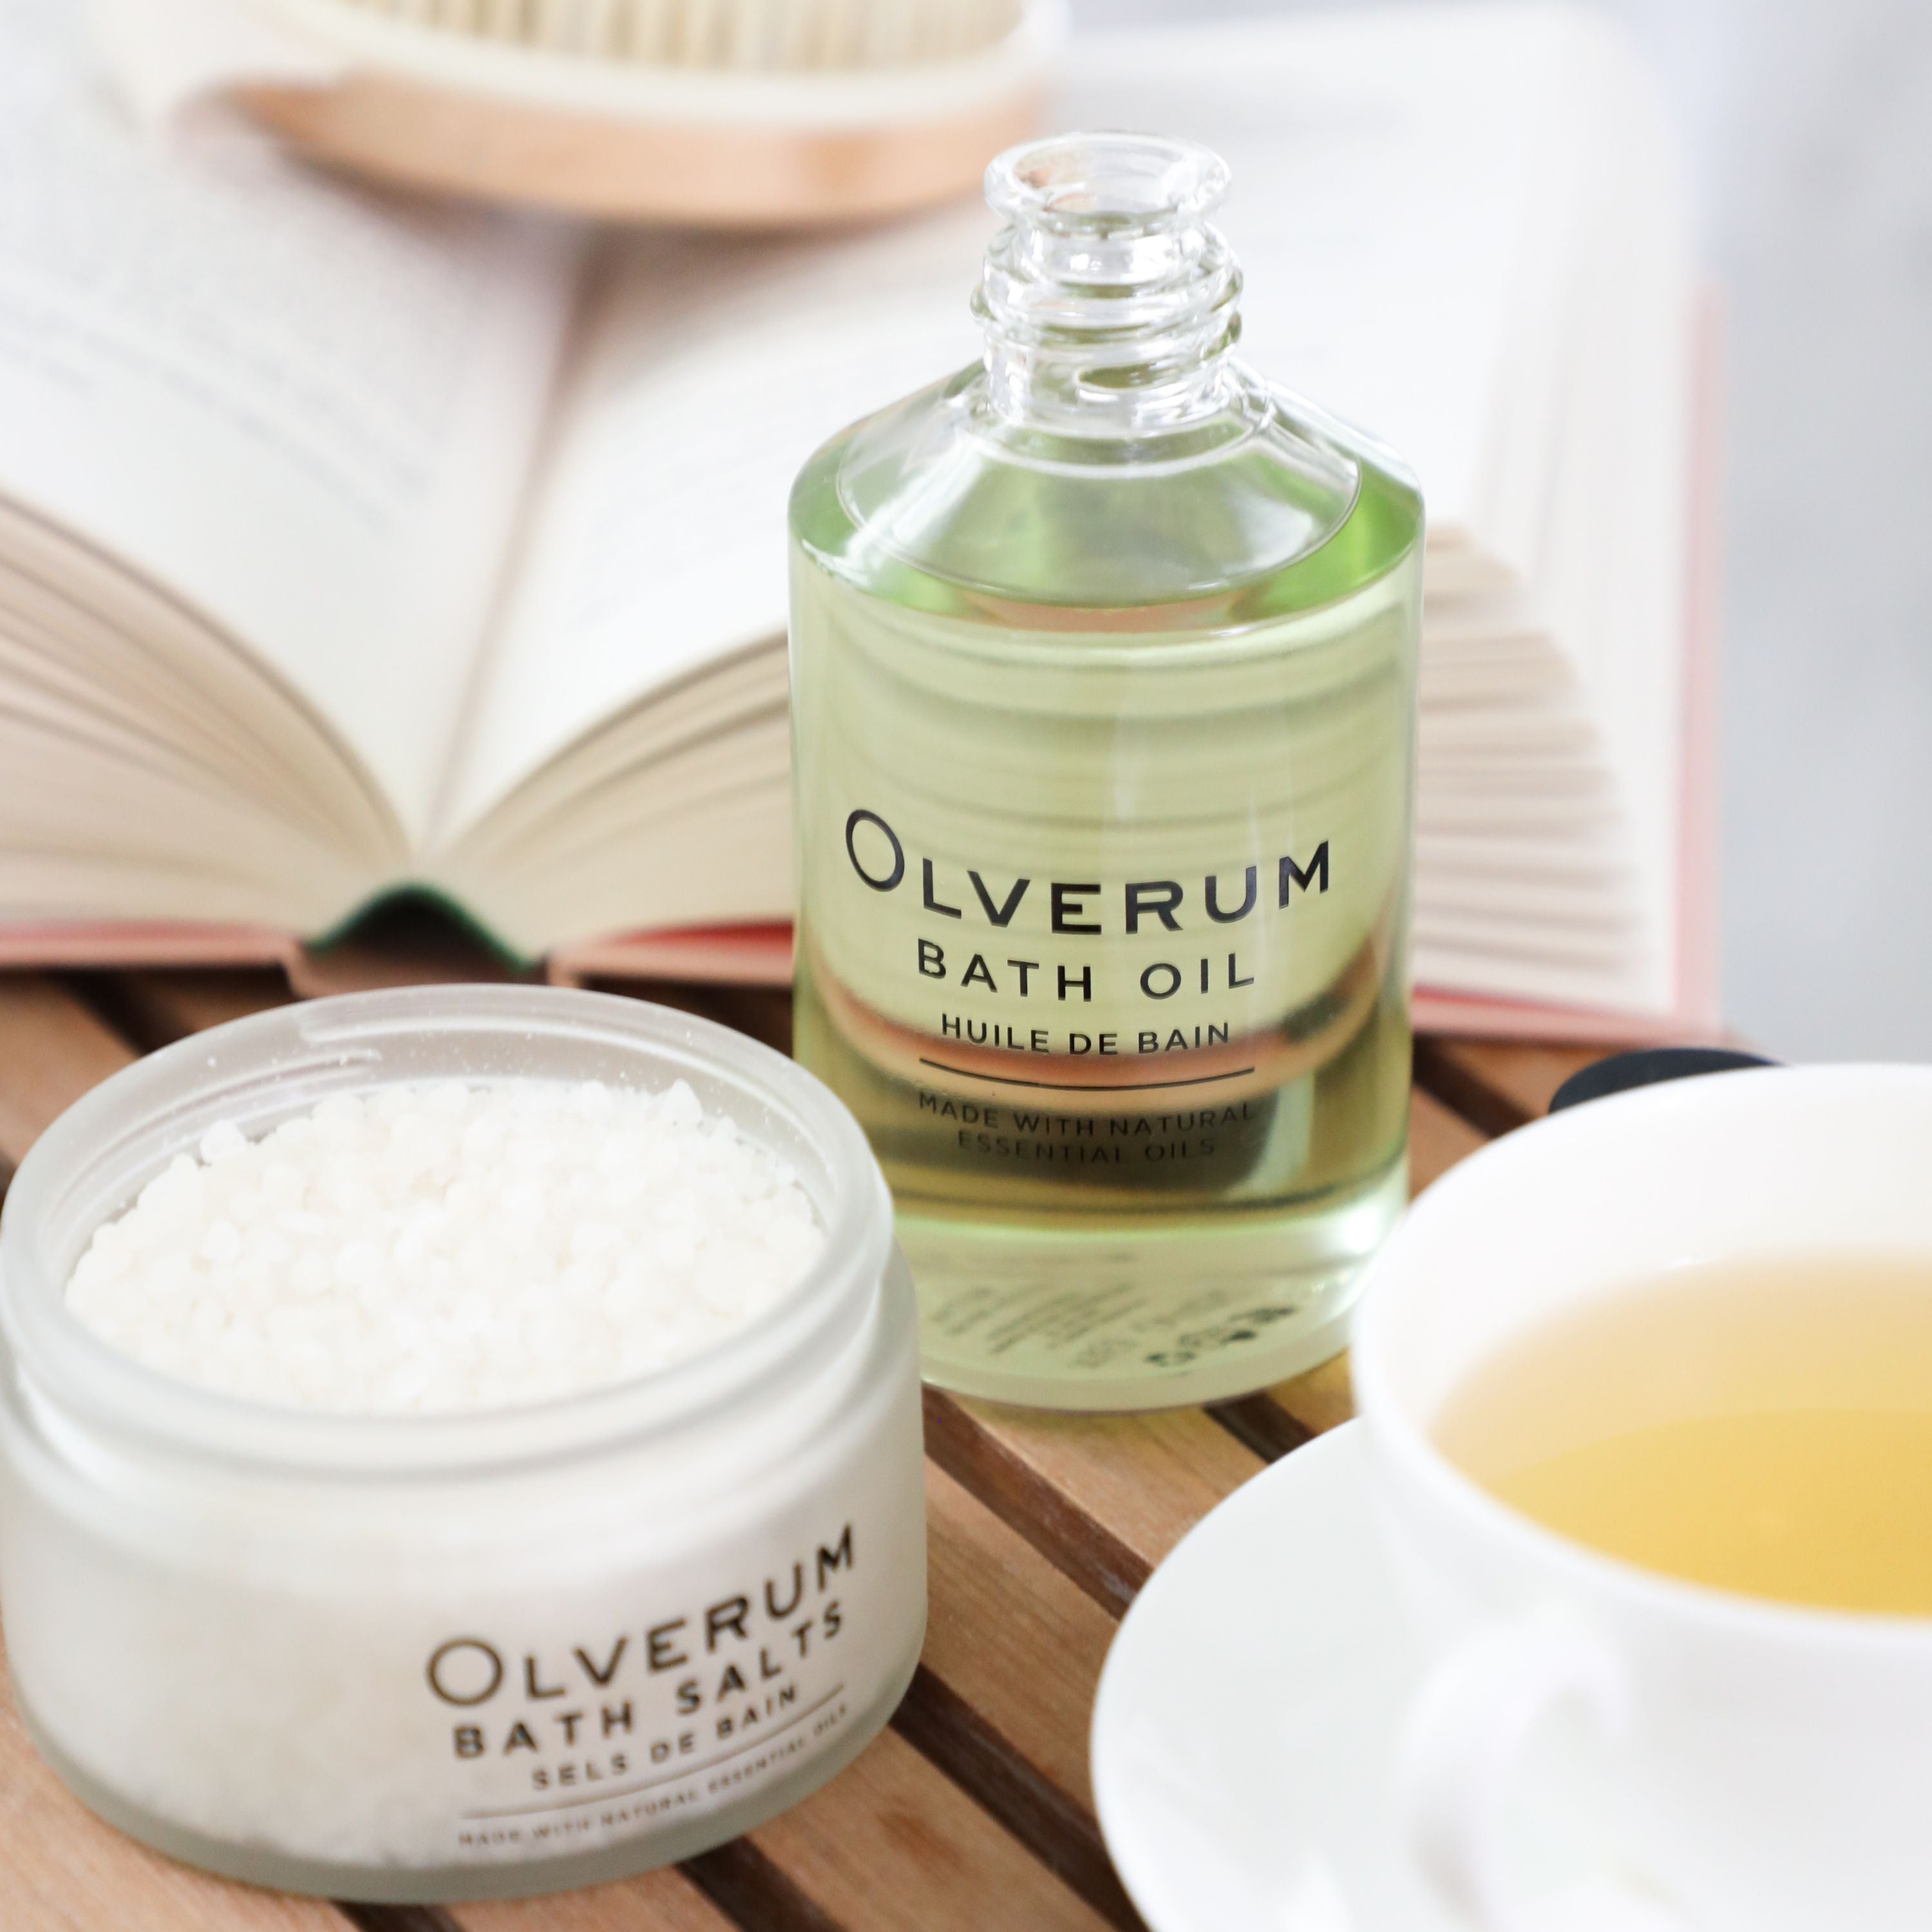 Olverum Bath Oil & Bath Salts